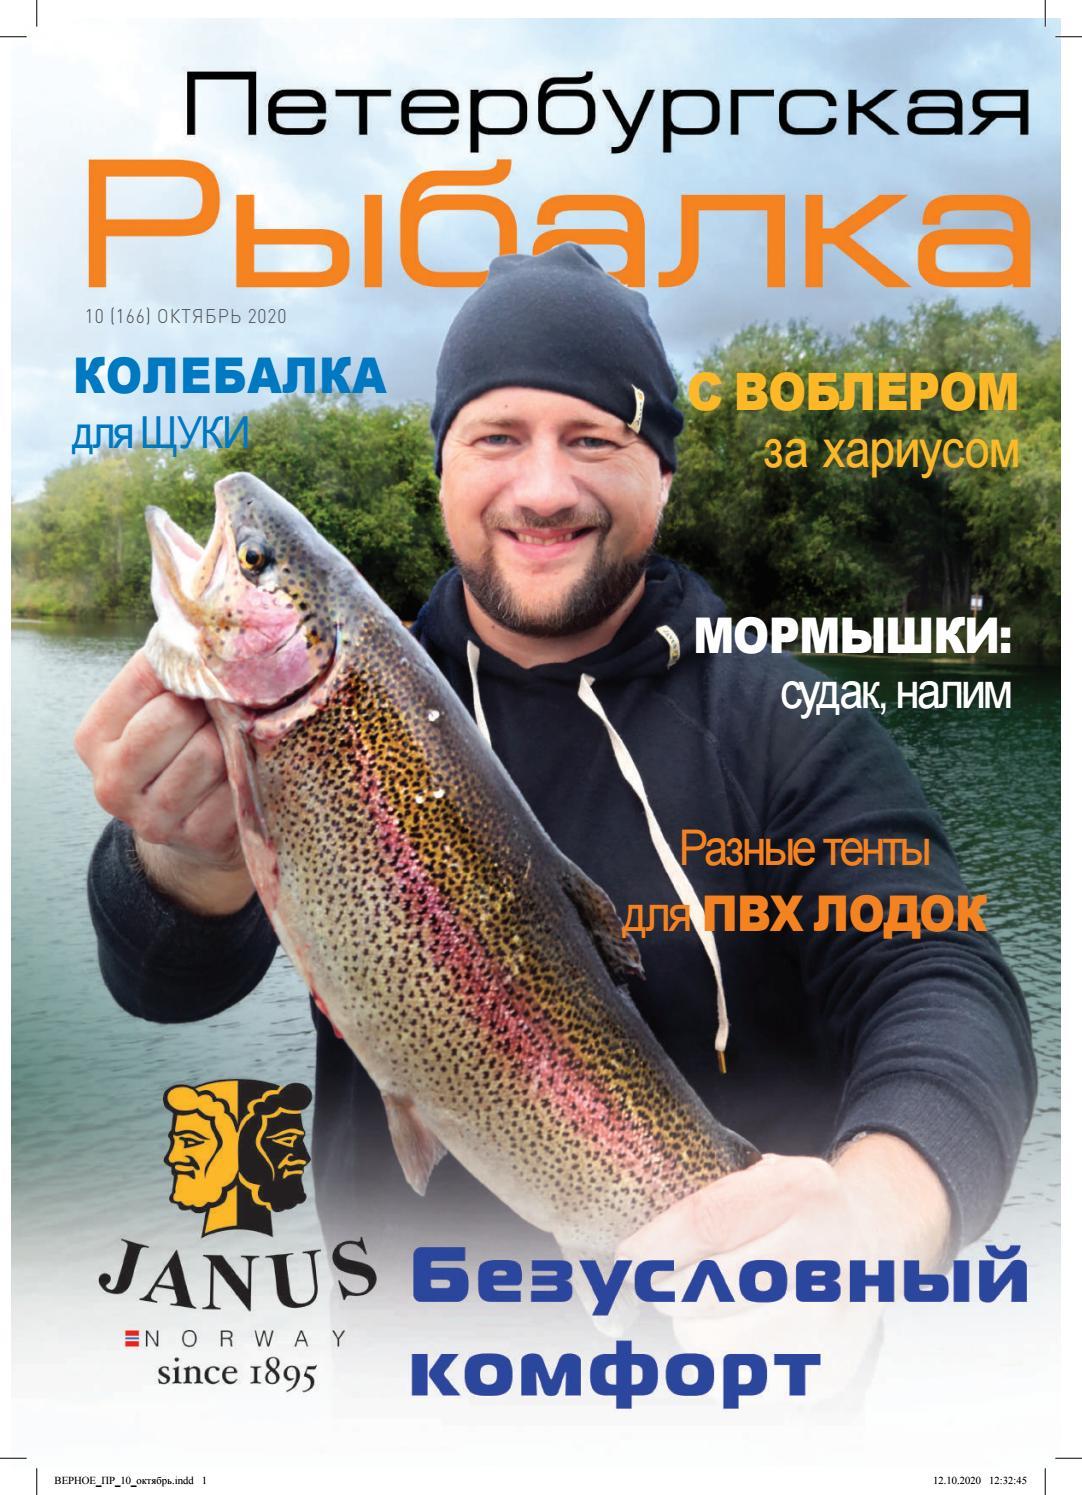 Петербургская рыбалка №10, октябрь 2020